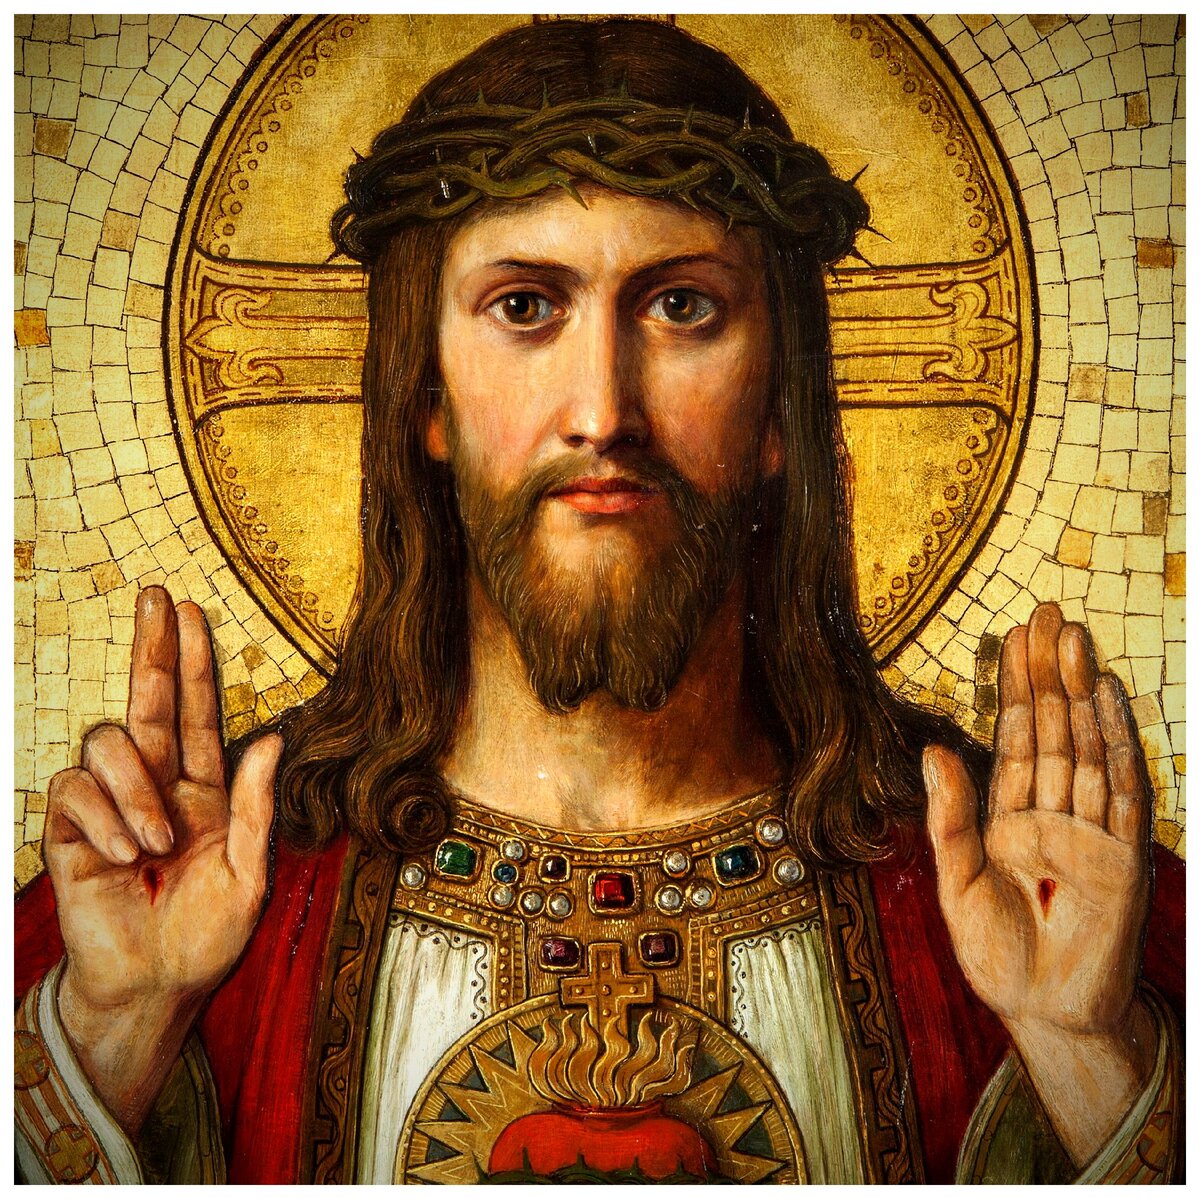 Почему Иисуса изображают как царя, если он никогда не носил дорогих одежд